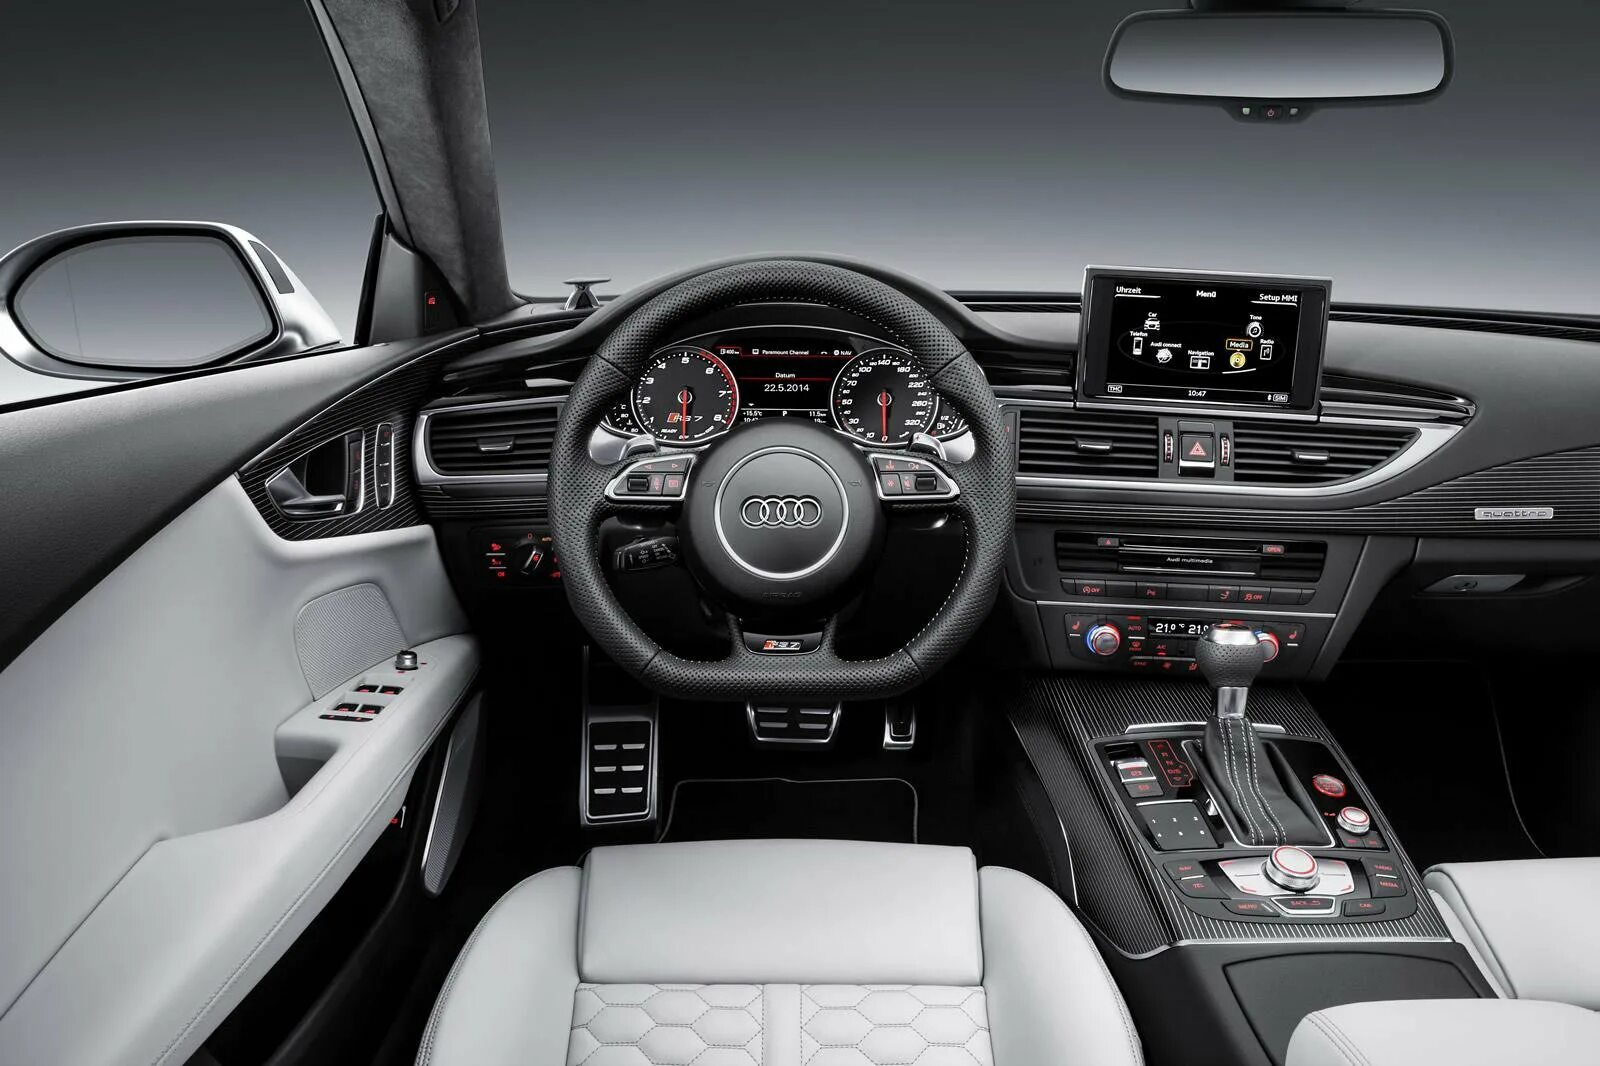 06 2015 г. Audi rs7 2020 салон. Audi rs7 Sportback салон. Audi rs7 Sportback 2022 салон. Ауди rs7 Sportback 2021 салон.